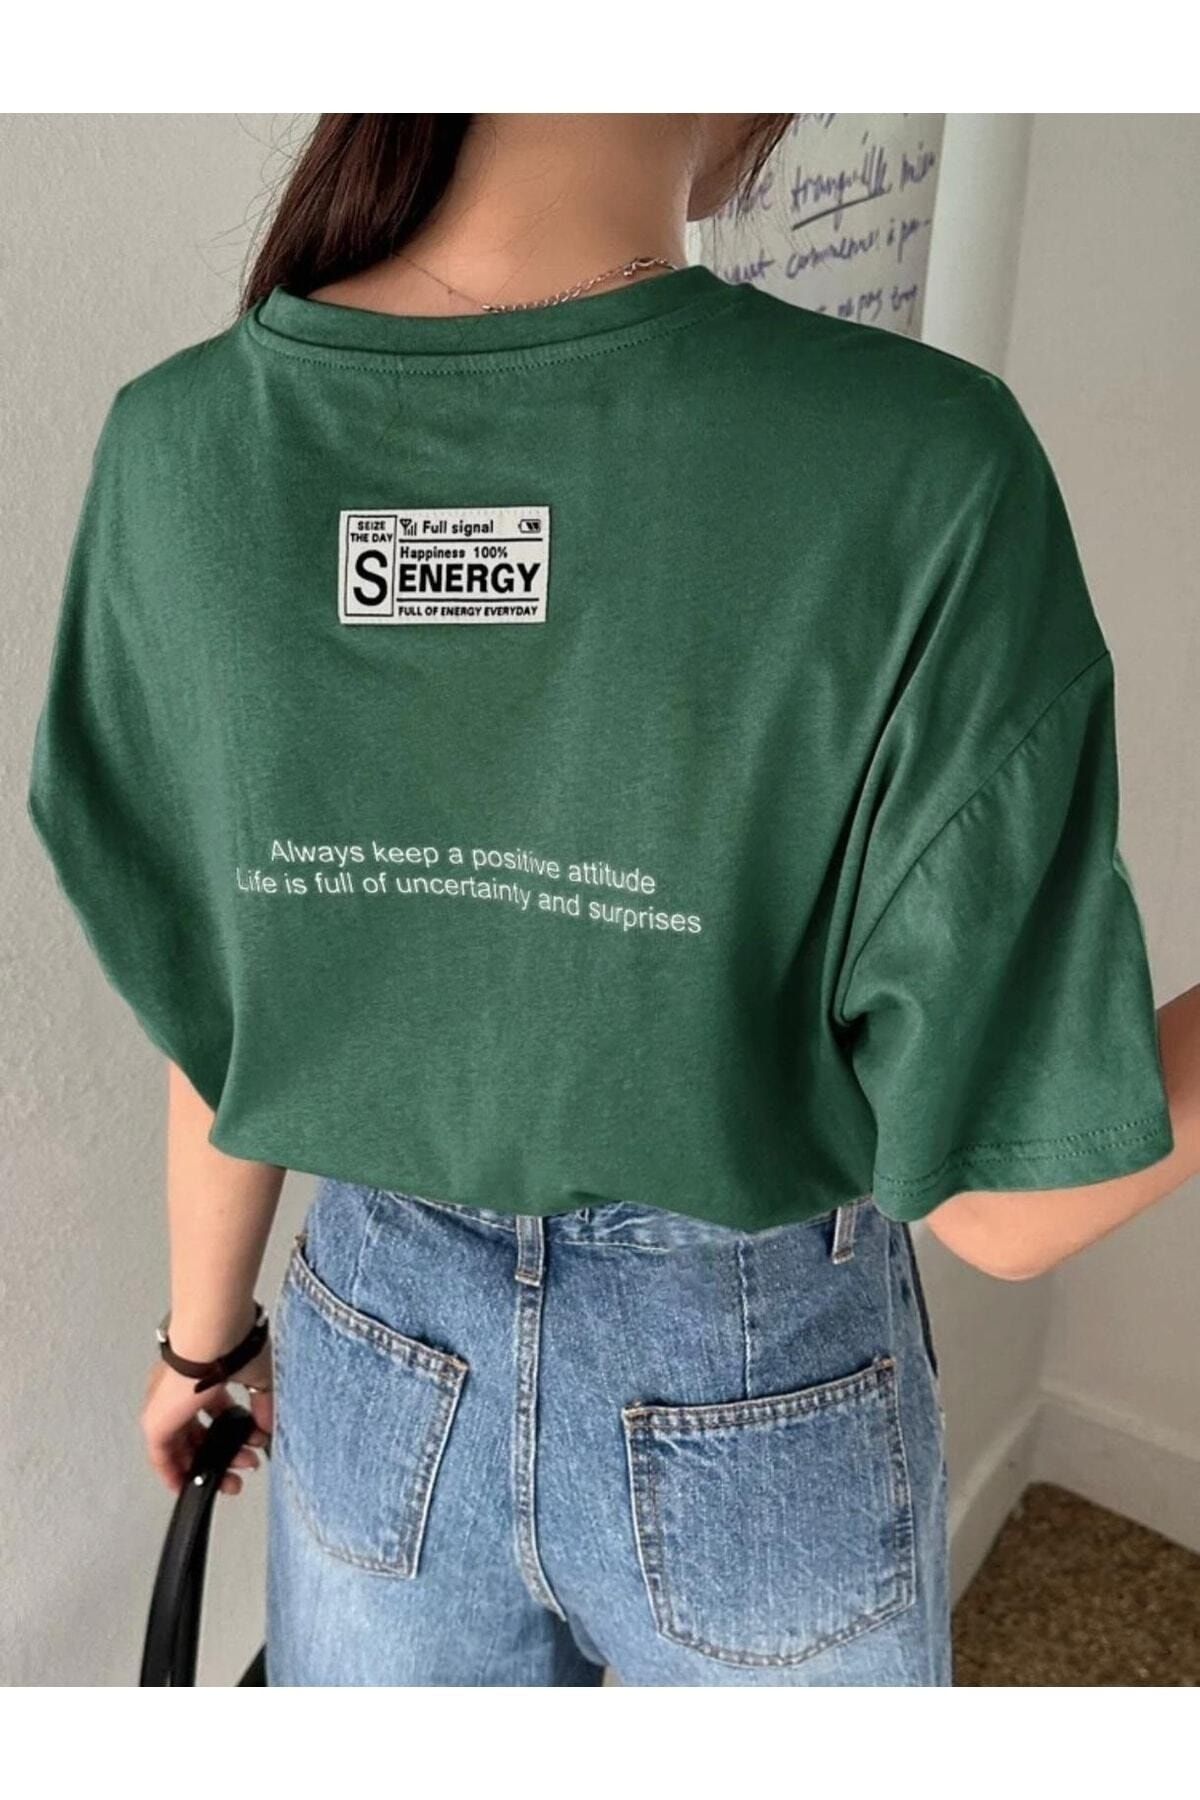 Genel Markalar Kadın Senergy Baskılı Oversize T-shirt